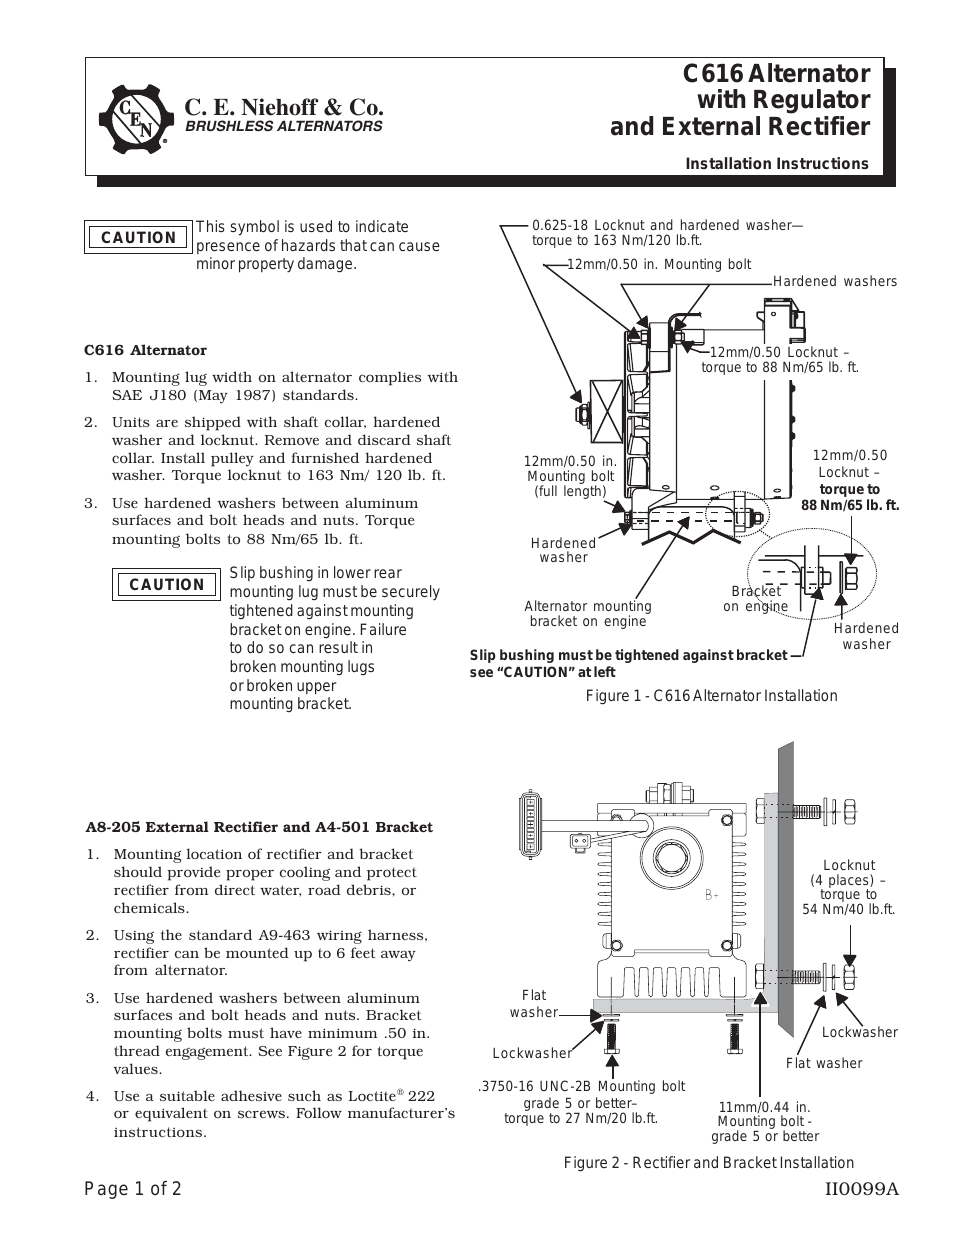 C616 Alternator/A8-205 Rectifier/A2-136 Regulator Installation